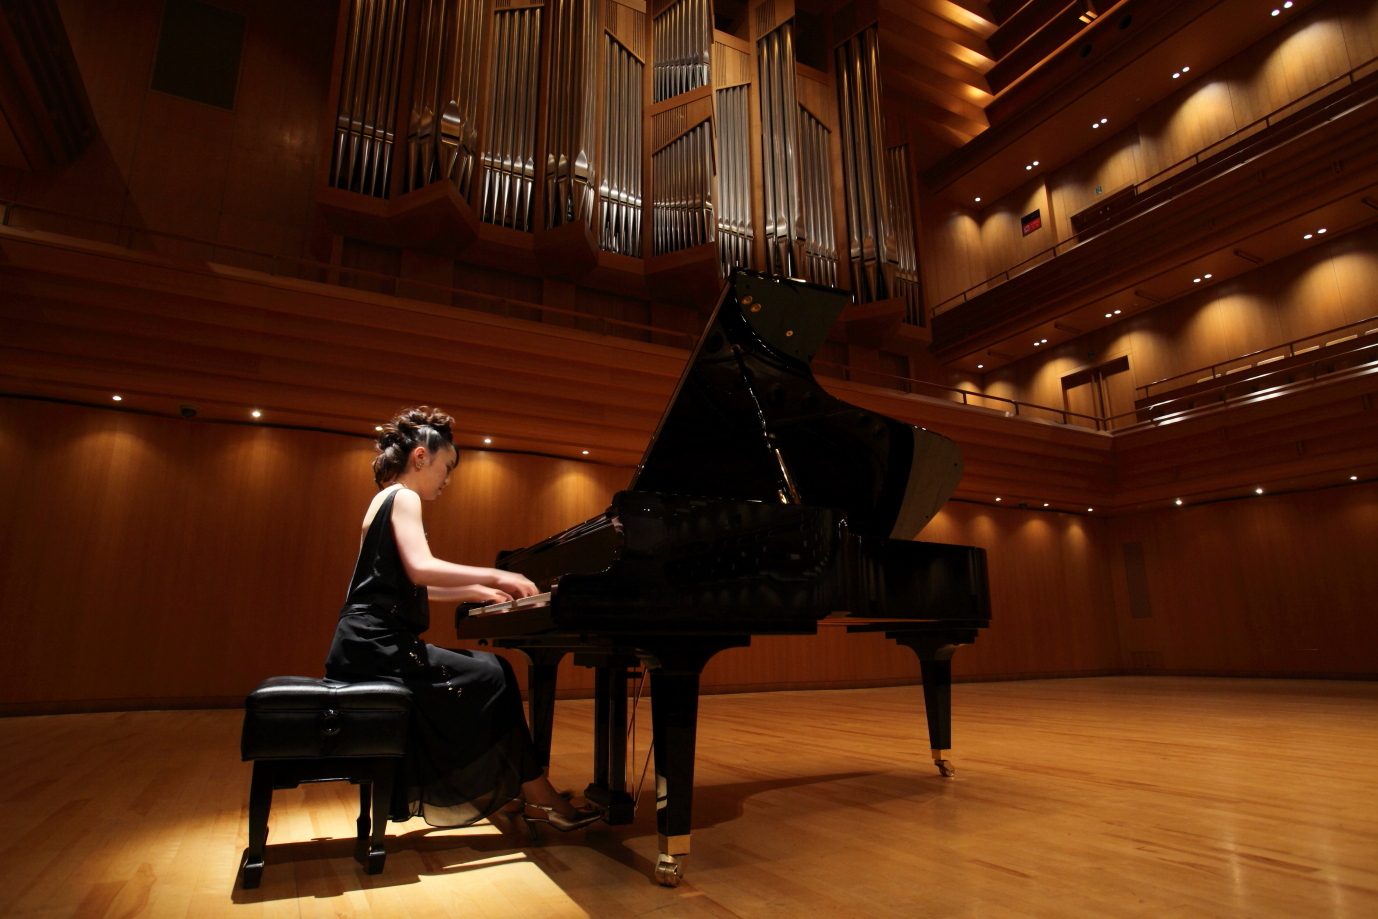 Shigeru Kawai grand piano